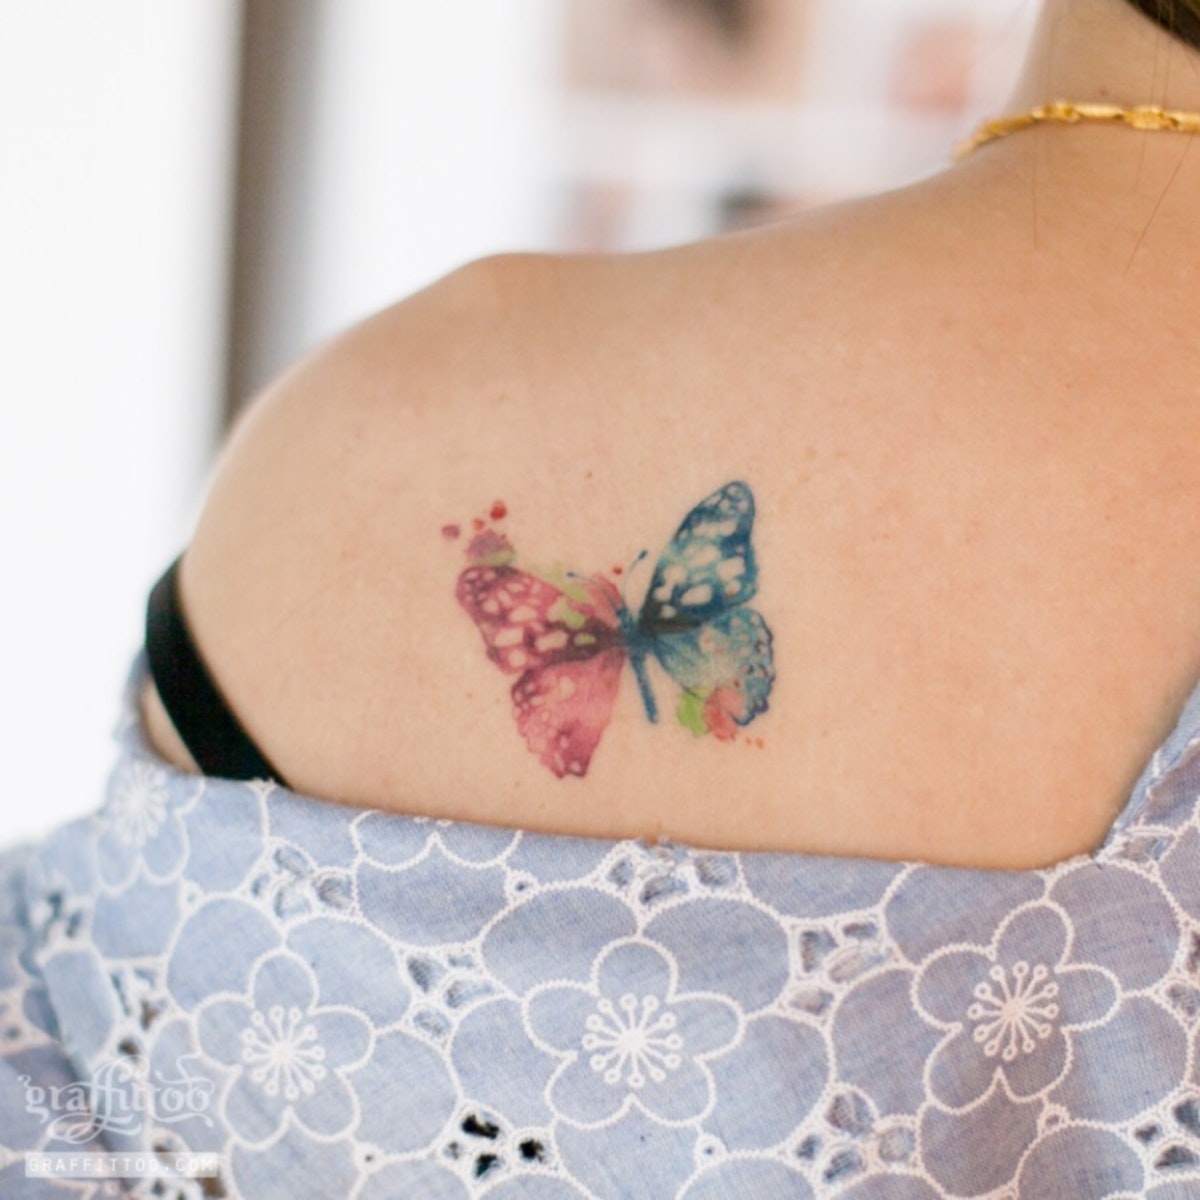 cuáles son los mejores diseños de tatuajes en acuarela, tattoos coloridos en imagines, tatuajes originales mujer